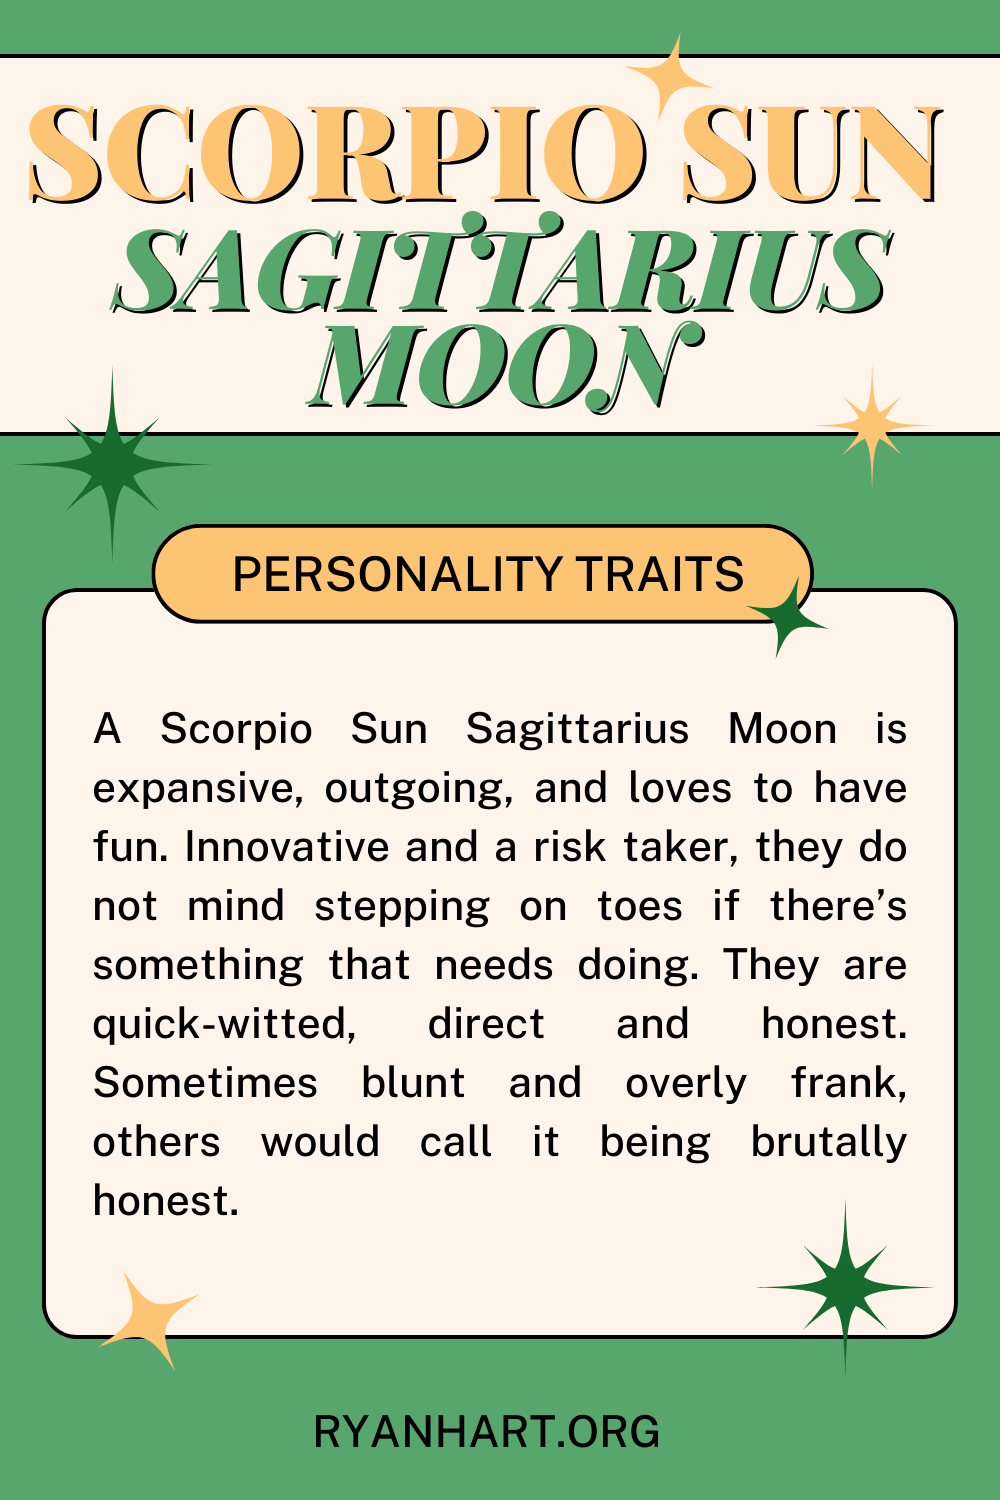 Scorpio Sun, Sagittarius Moon